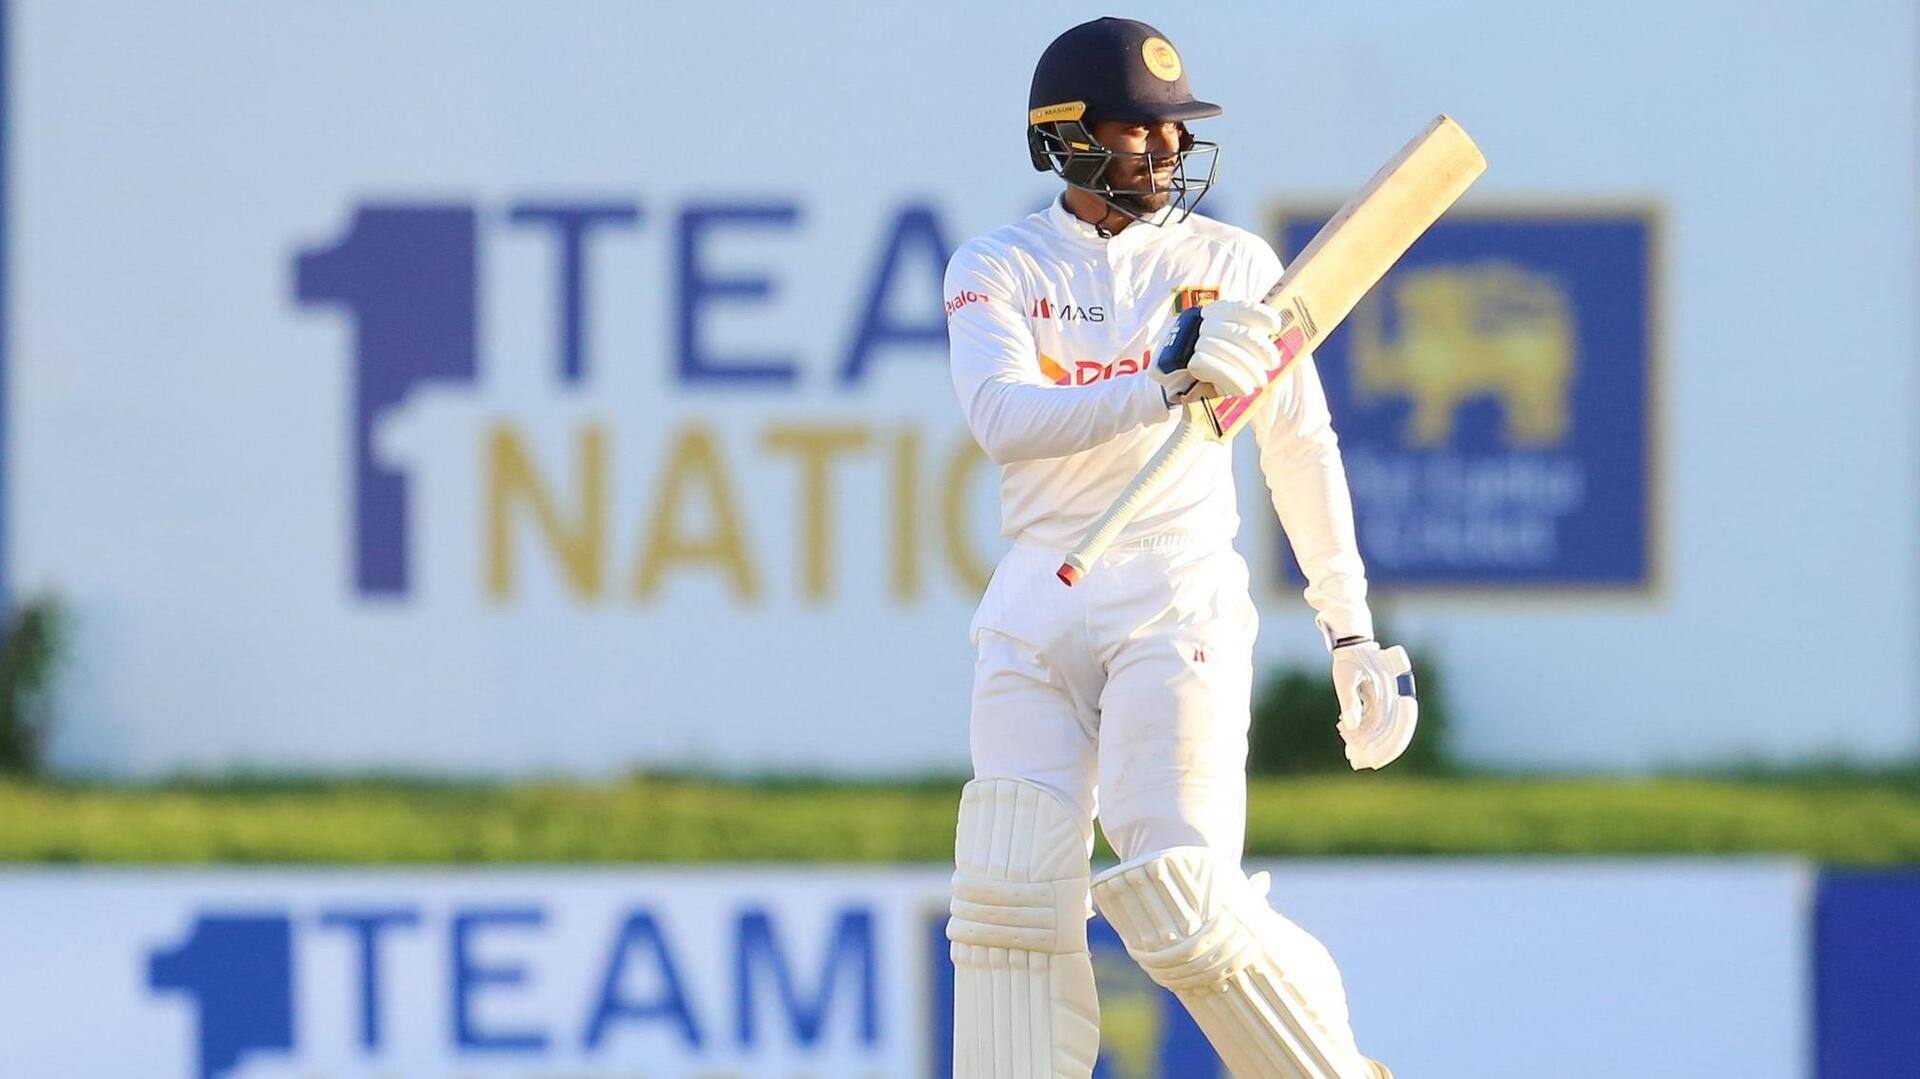 श्रीलंका बनाम पाकिस्तान: धनंजय डी सिल्वा ने जमाया टेस्ट करियर का 10वां शतक, जानिए उनके आंकड़े 